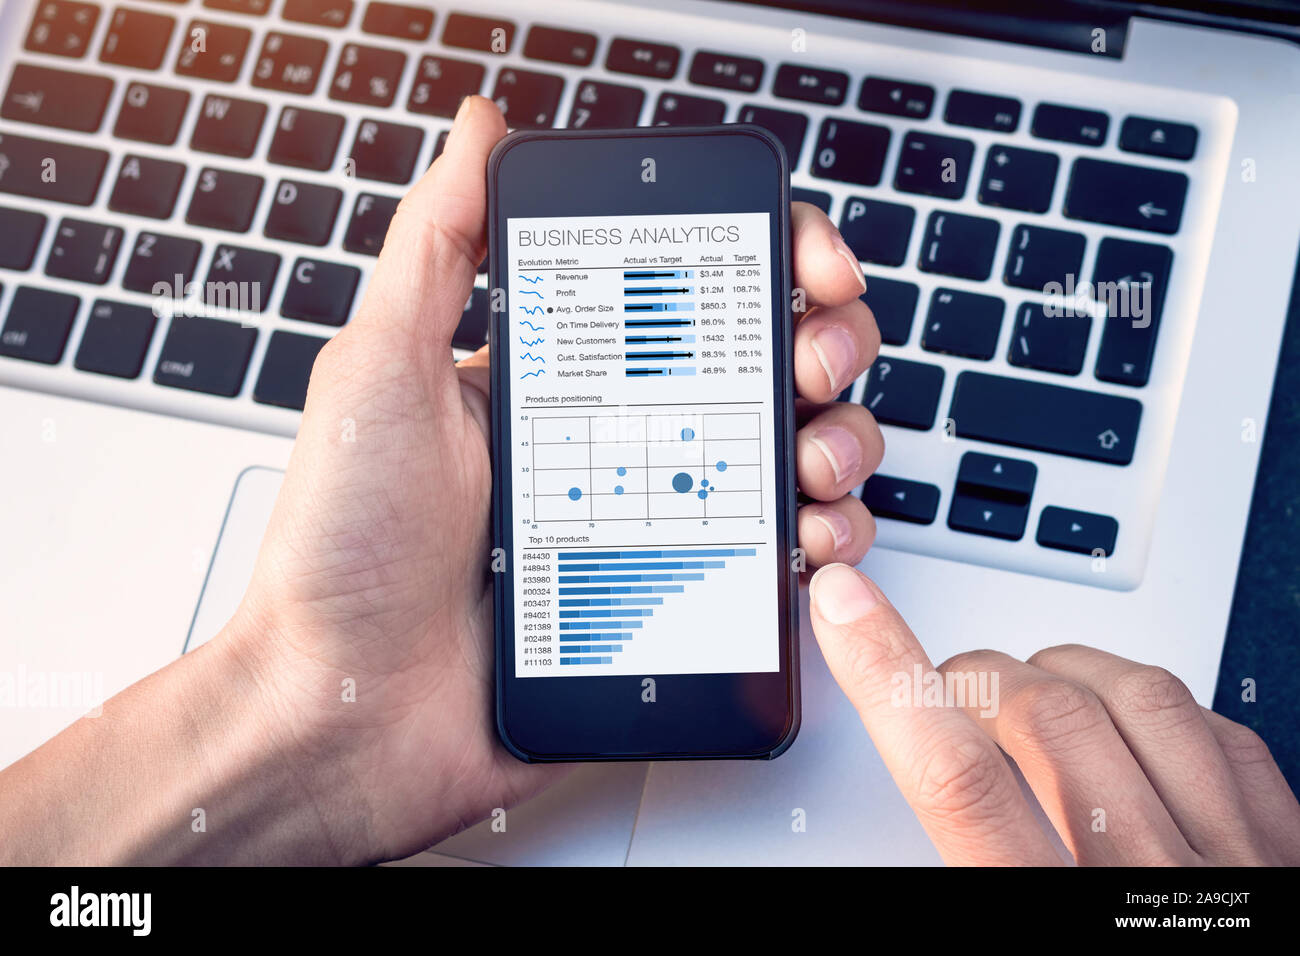 Business Analytics Dashboard der Bildschirm des Smartphones, Analyst Analyse von Vertrieb und Betrieb daten Key Performance Indicators (KPI) Charts und Metriken Stockfoto